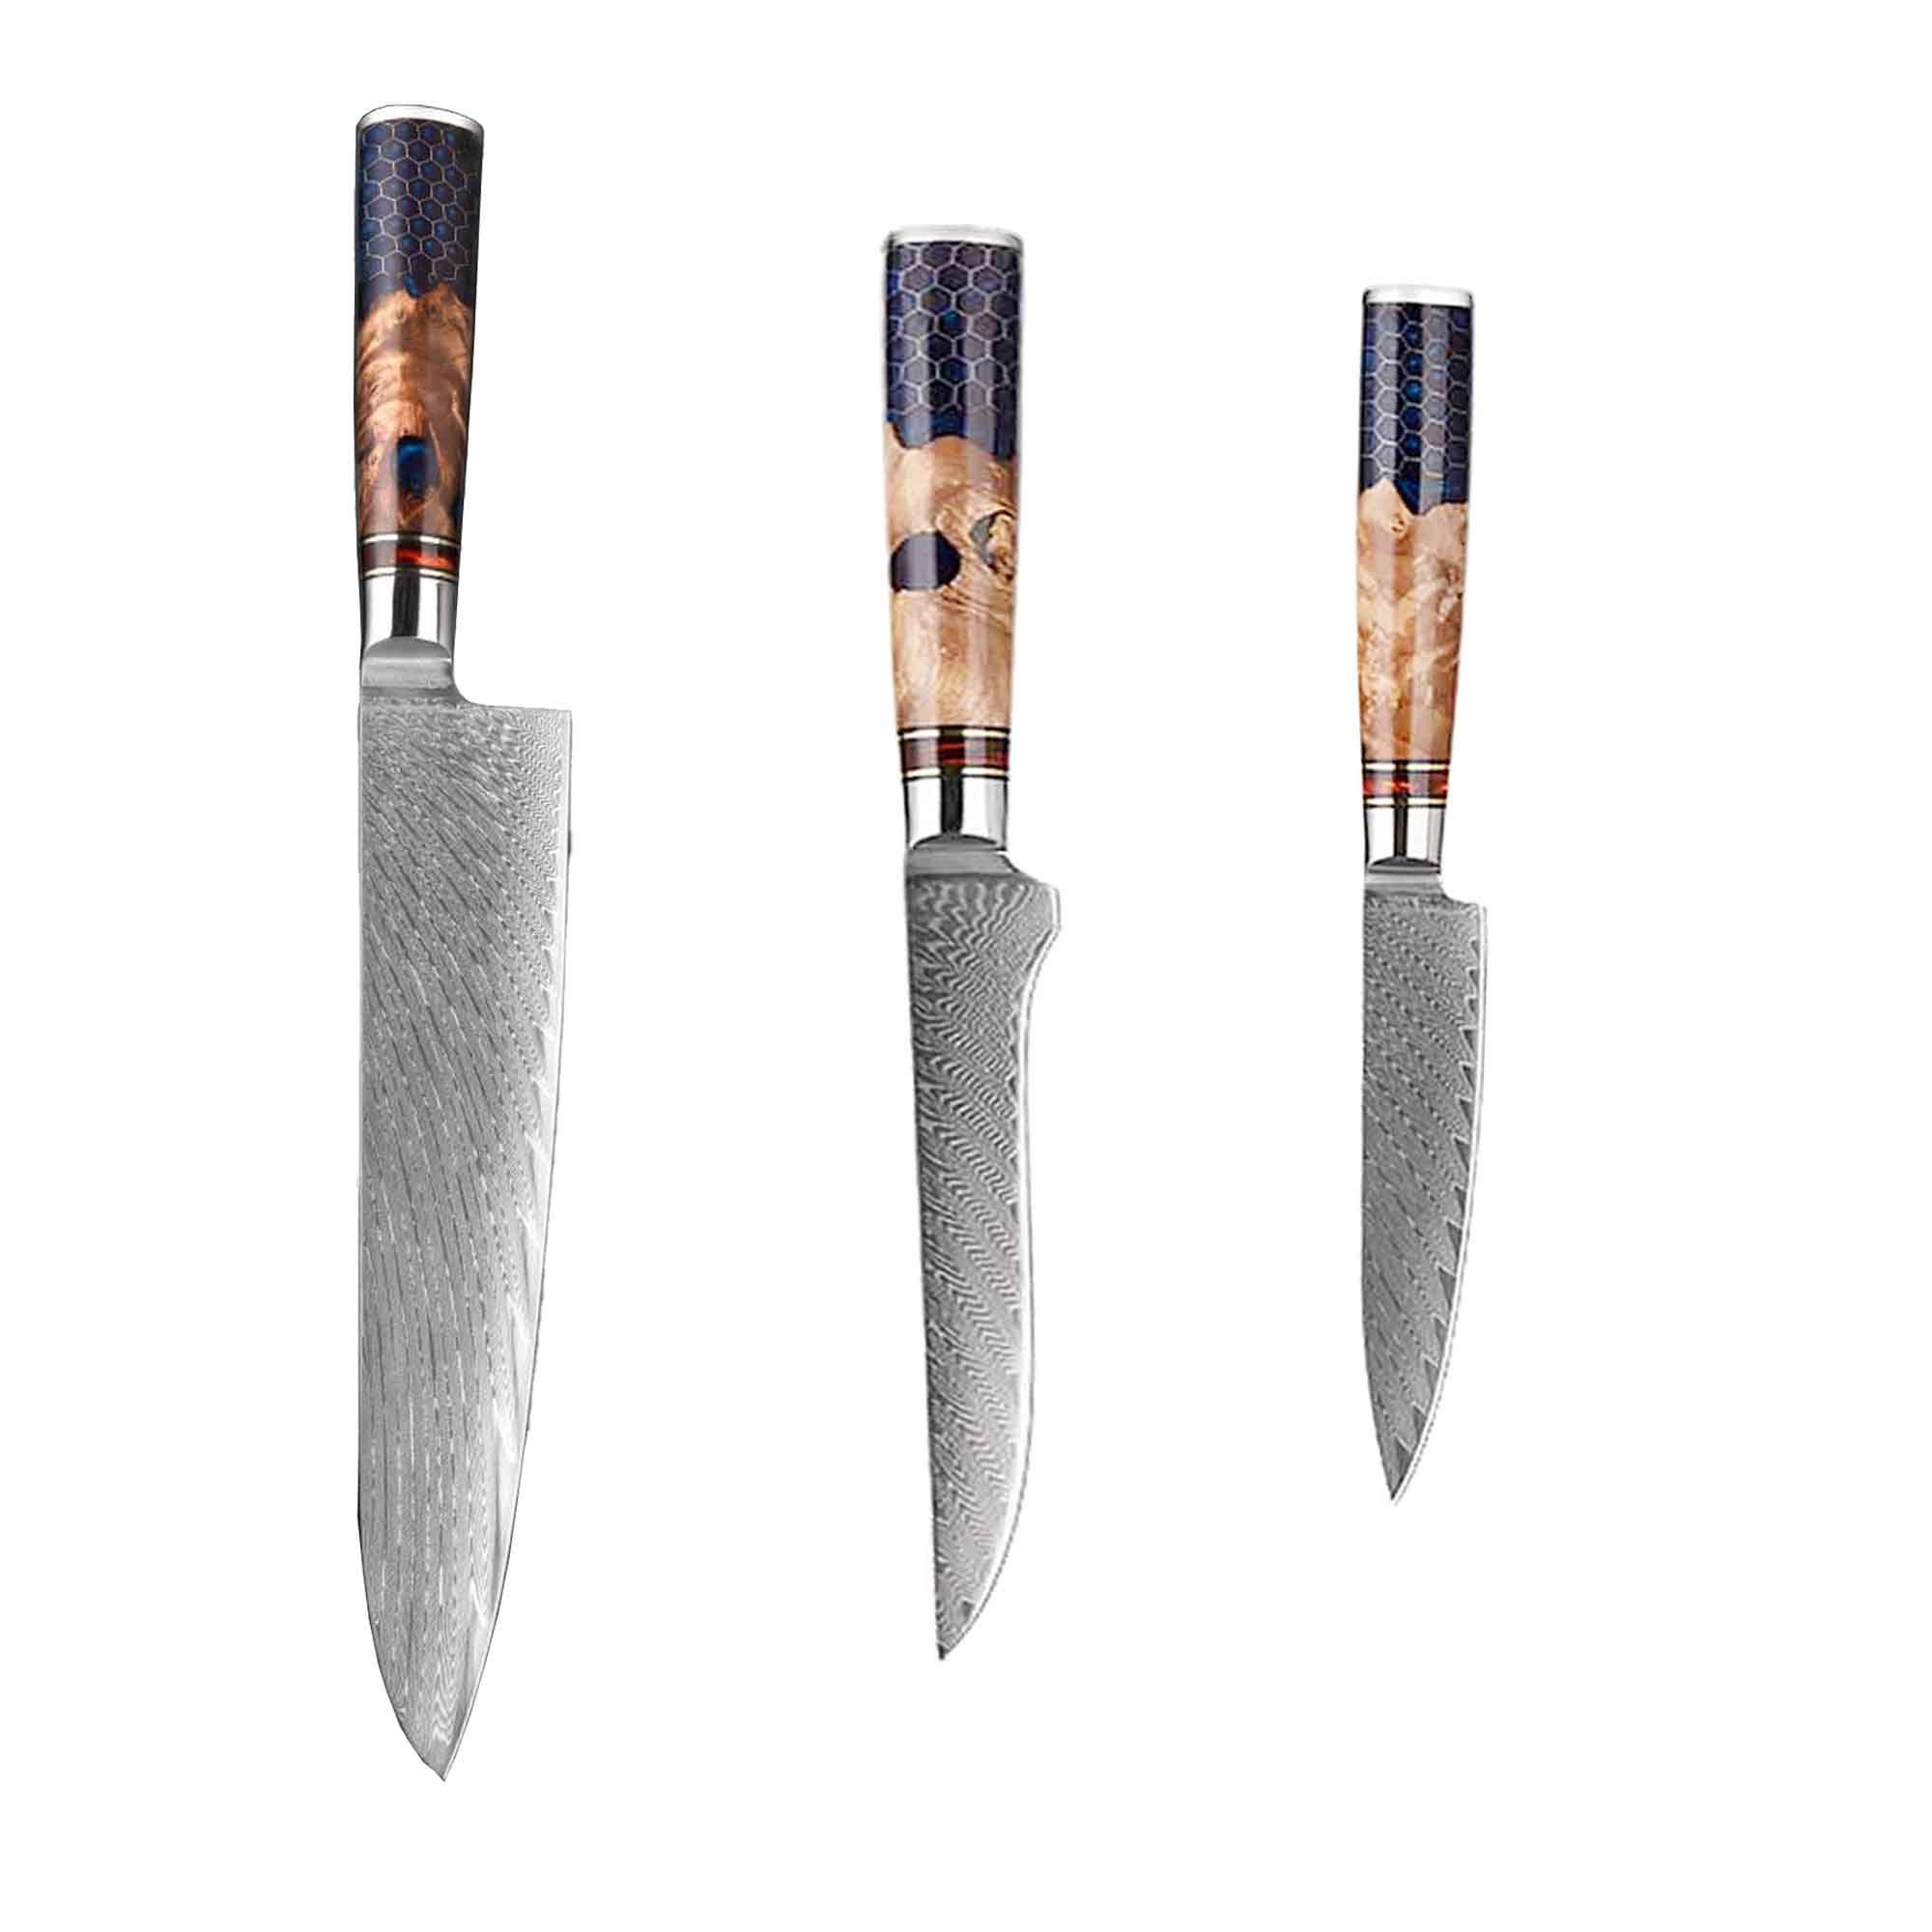 ist Damast ein Muxel scharfe schöne 3-tlg Allzweckmesser extrem Küchenmesser Messer Unikat Set Kochmesser, Extrem Jedes